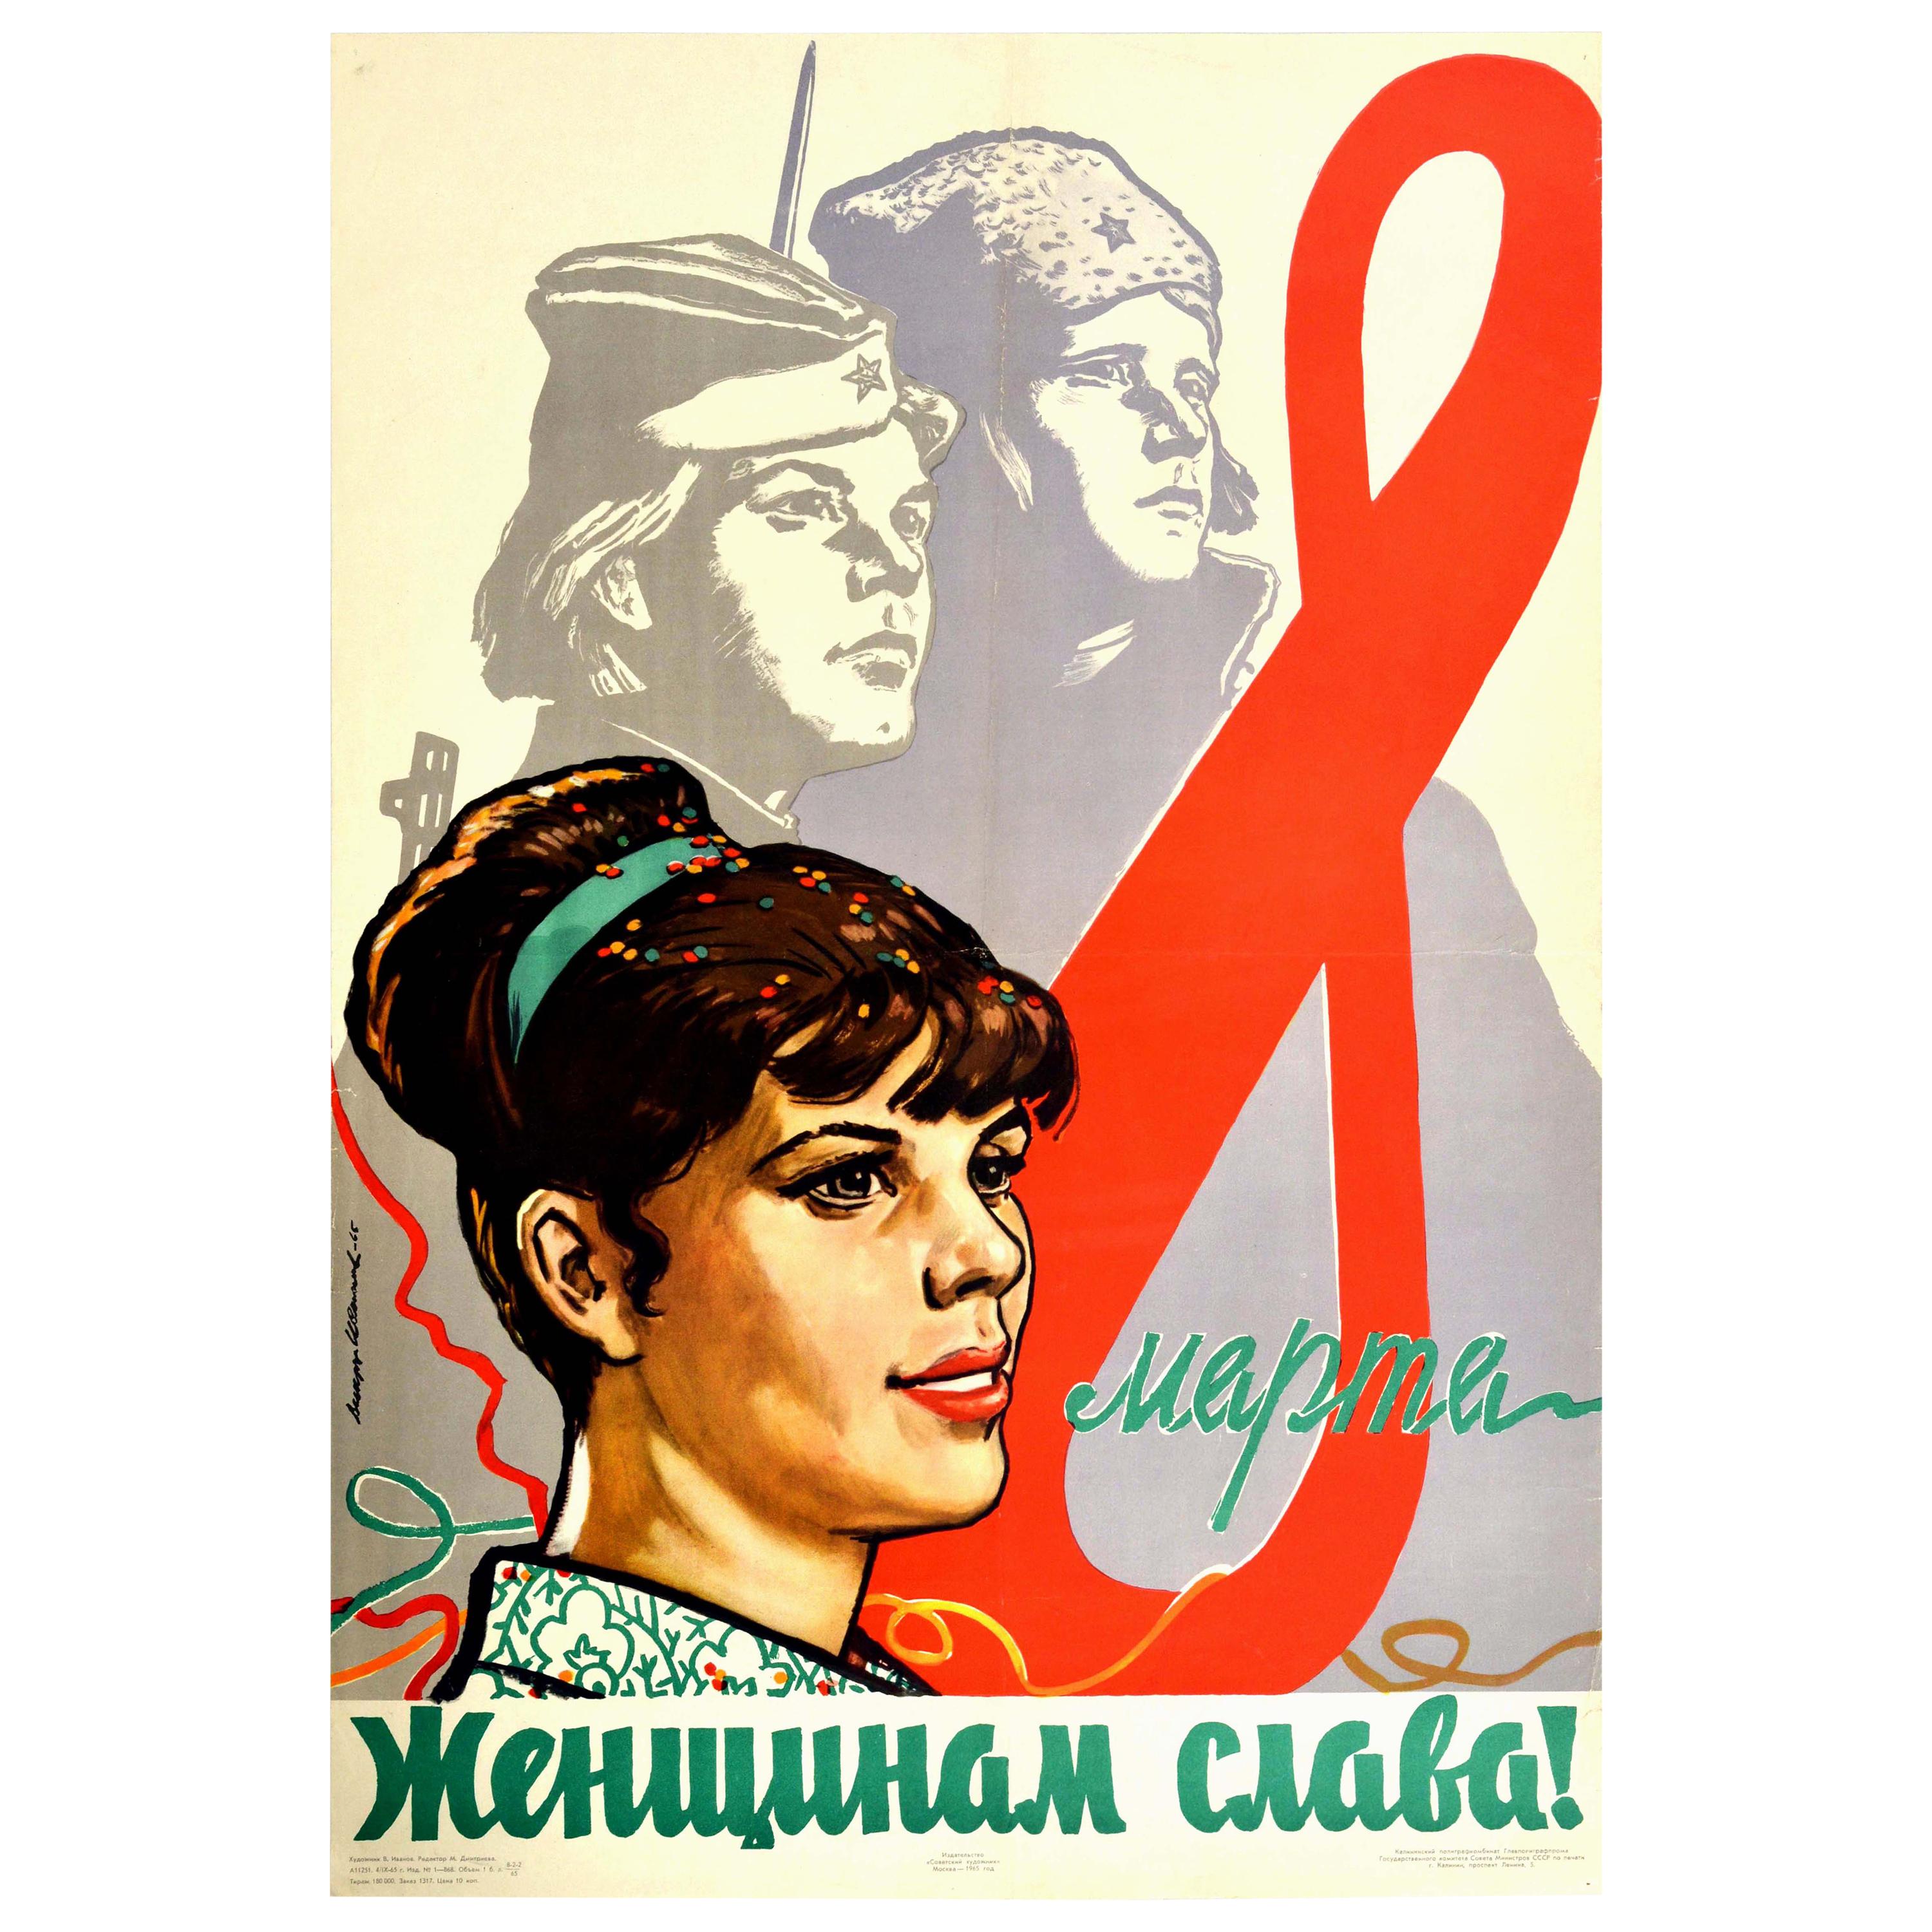 Vintage-Poster "Glück für Frauen", UdSSR, Internationaler Frauentag, 8. März